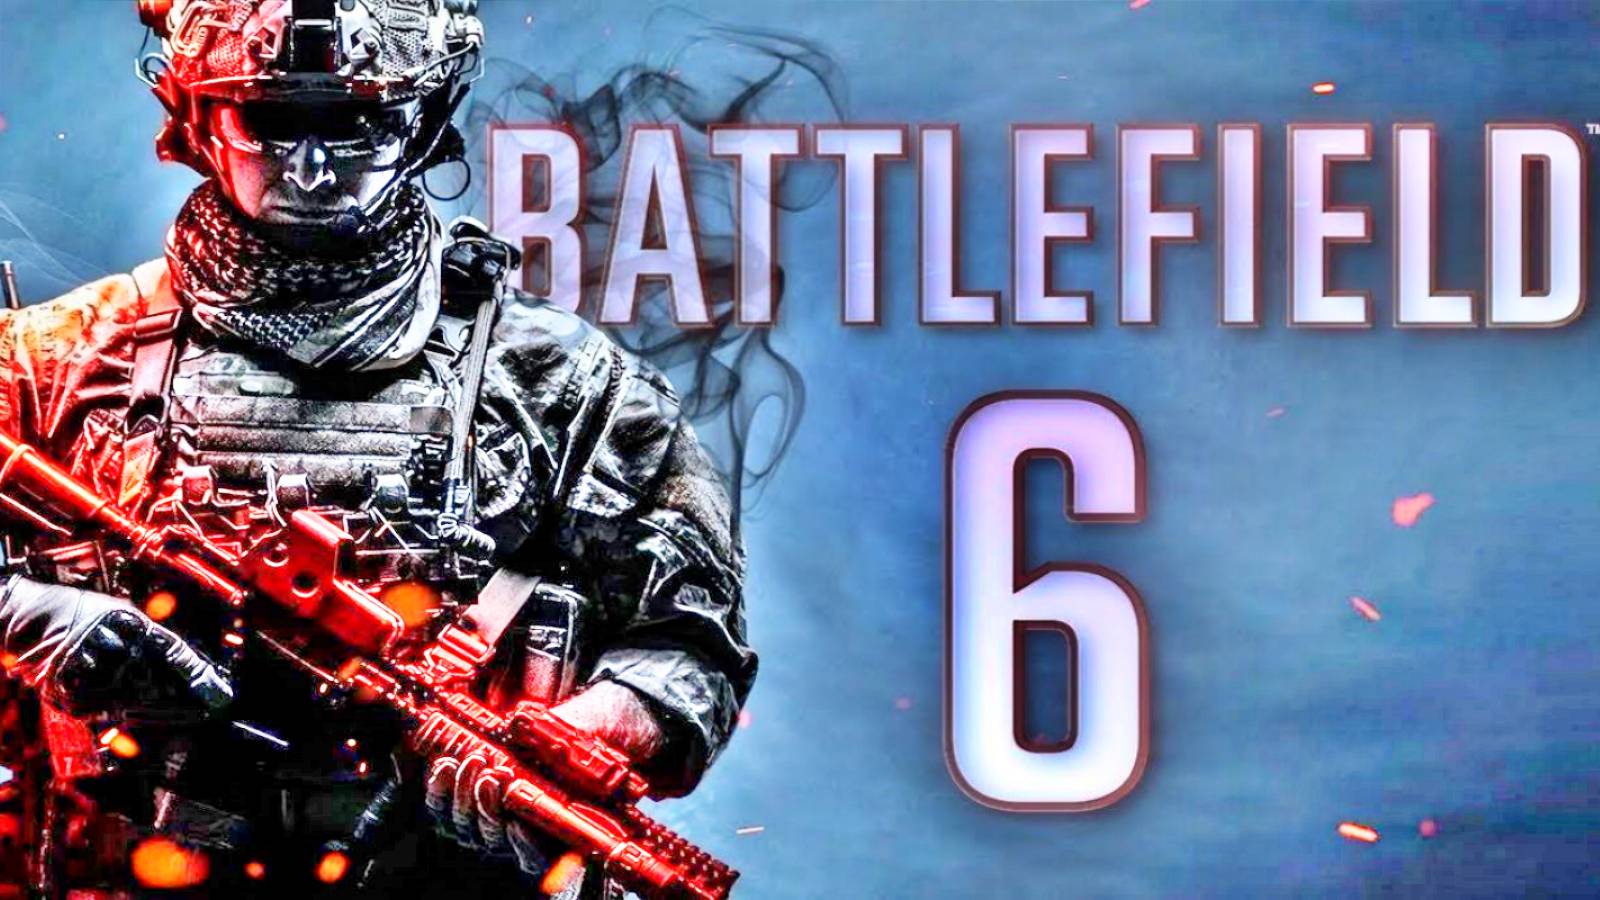 Battlefield 6 News